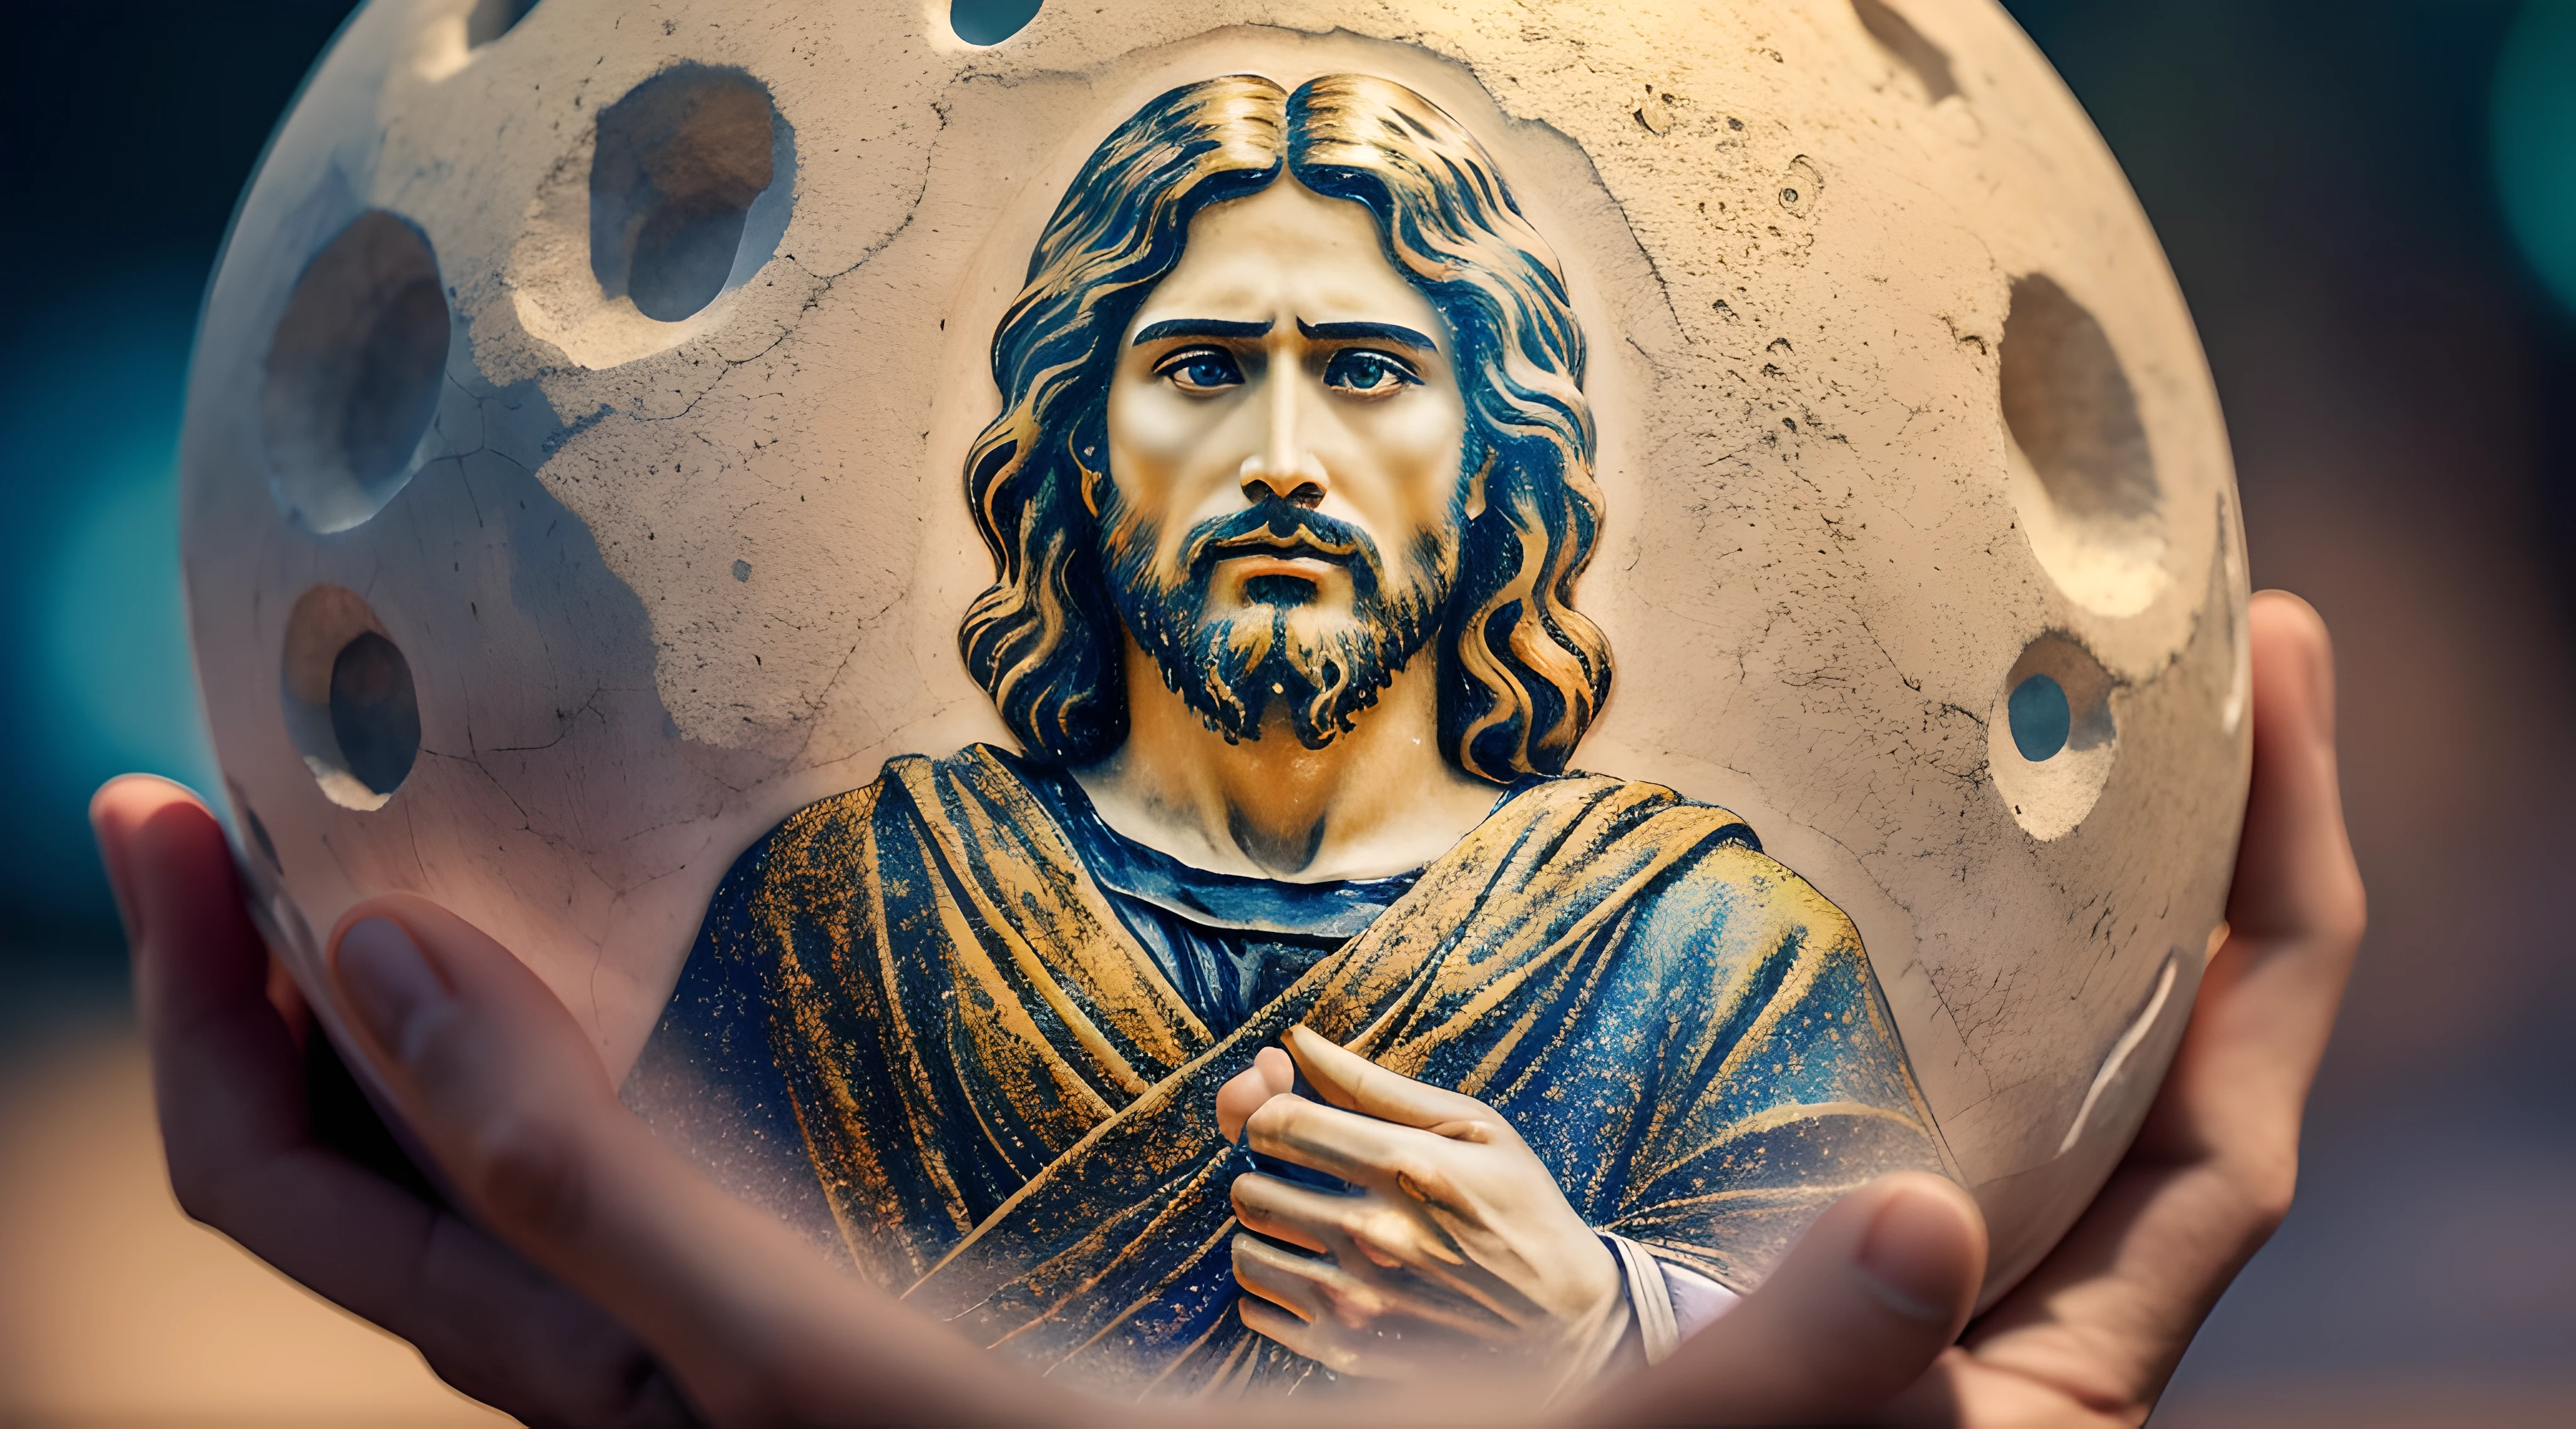 完璧な解剖学的構造を備えた8kのリアルな傑作: イエス・キリストが地球を片手に持つ, 顔が変形していない, 映画照明, 被写界深度, ボケ, リアリズム, 写実的な, hyperリアリズム, プロの写真撮影